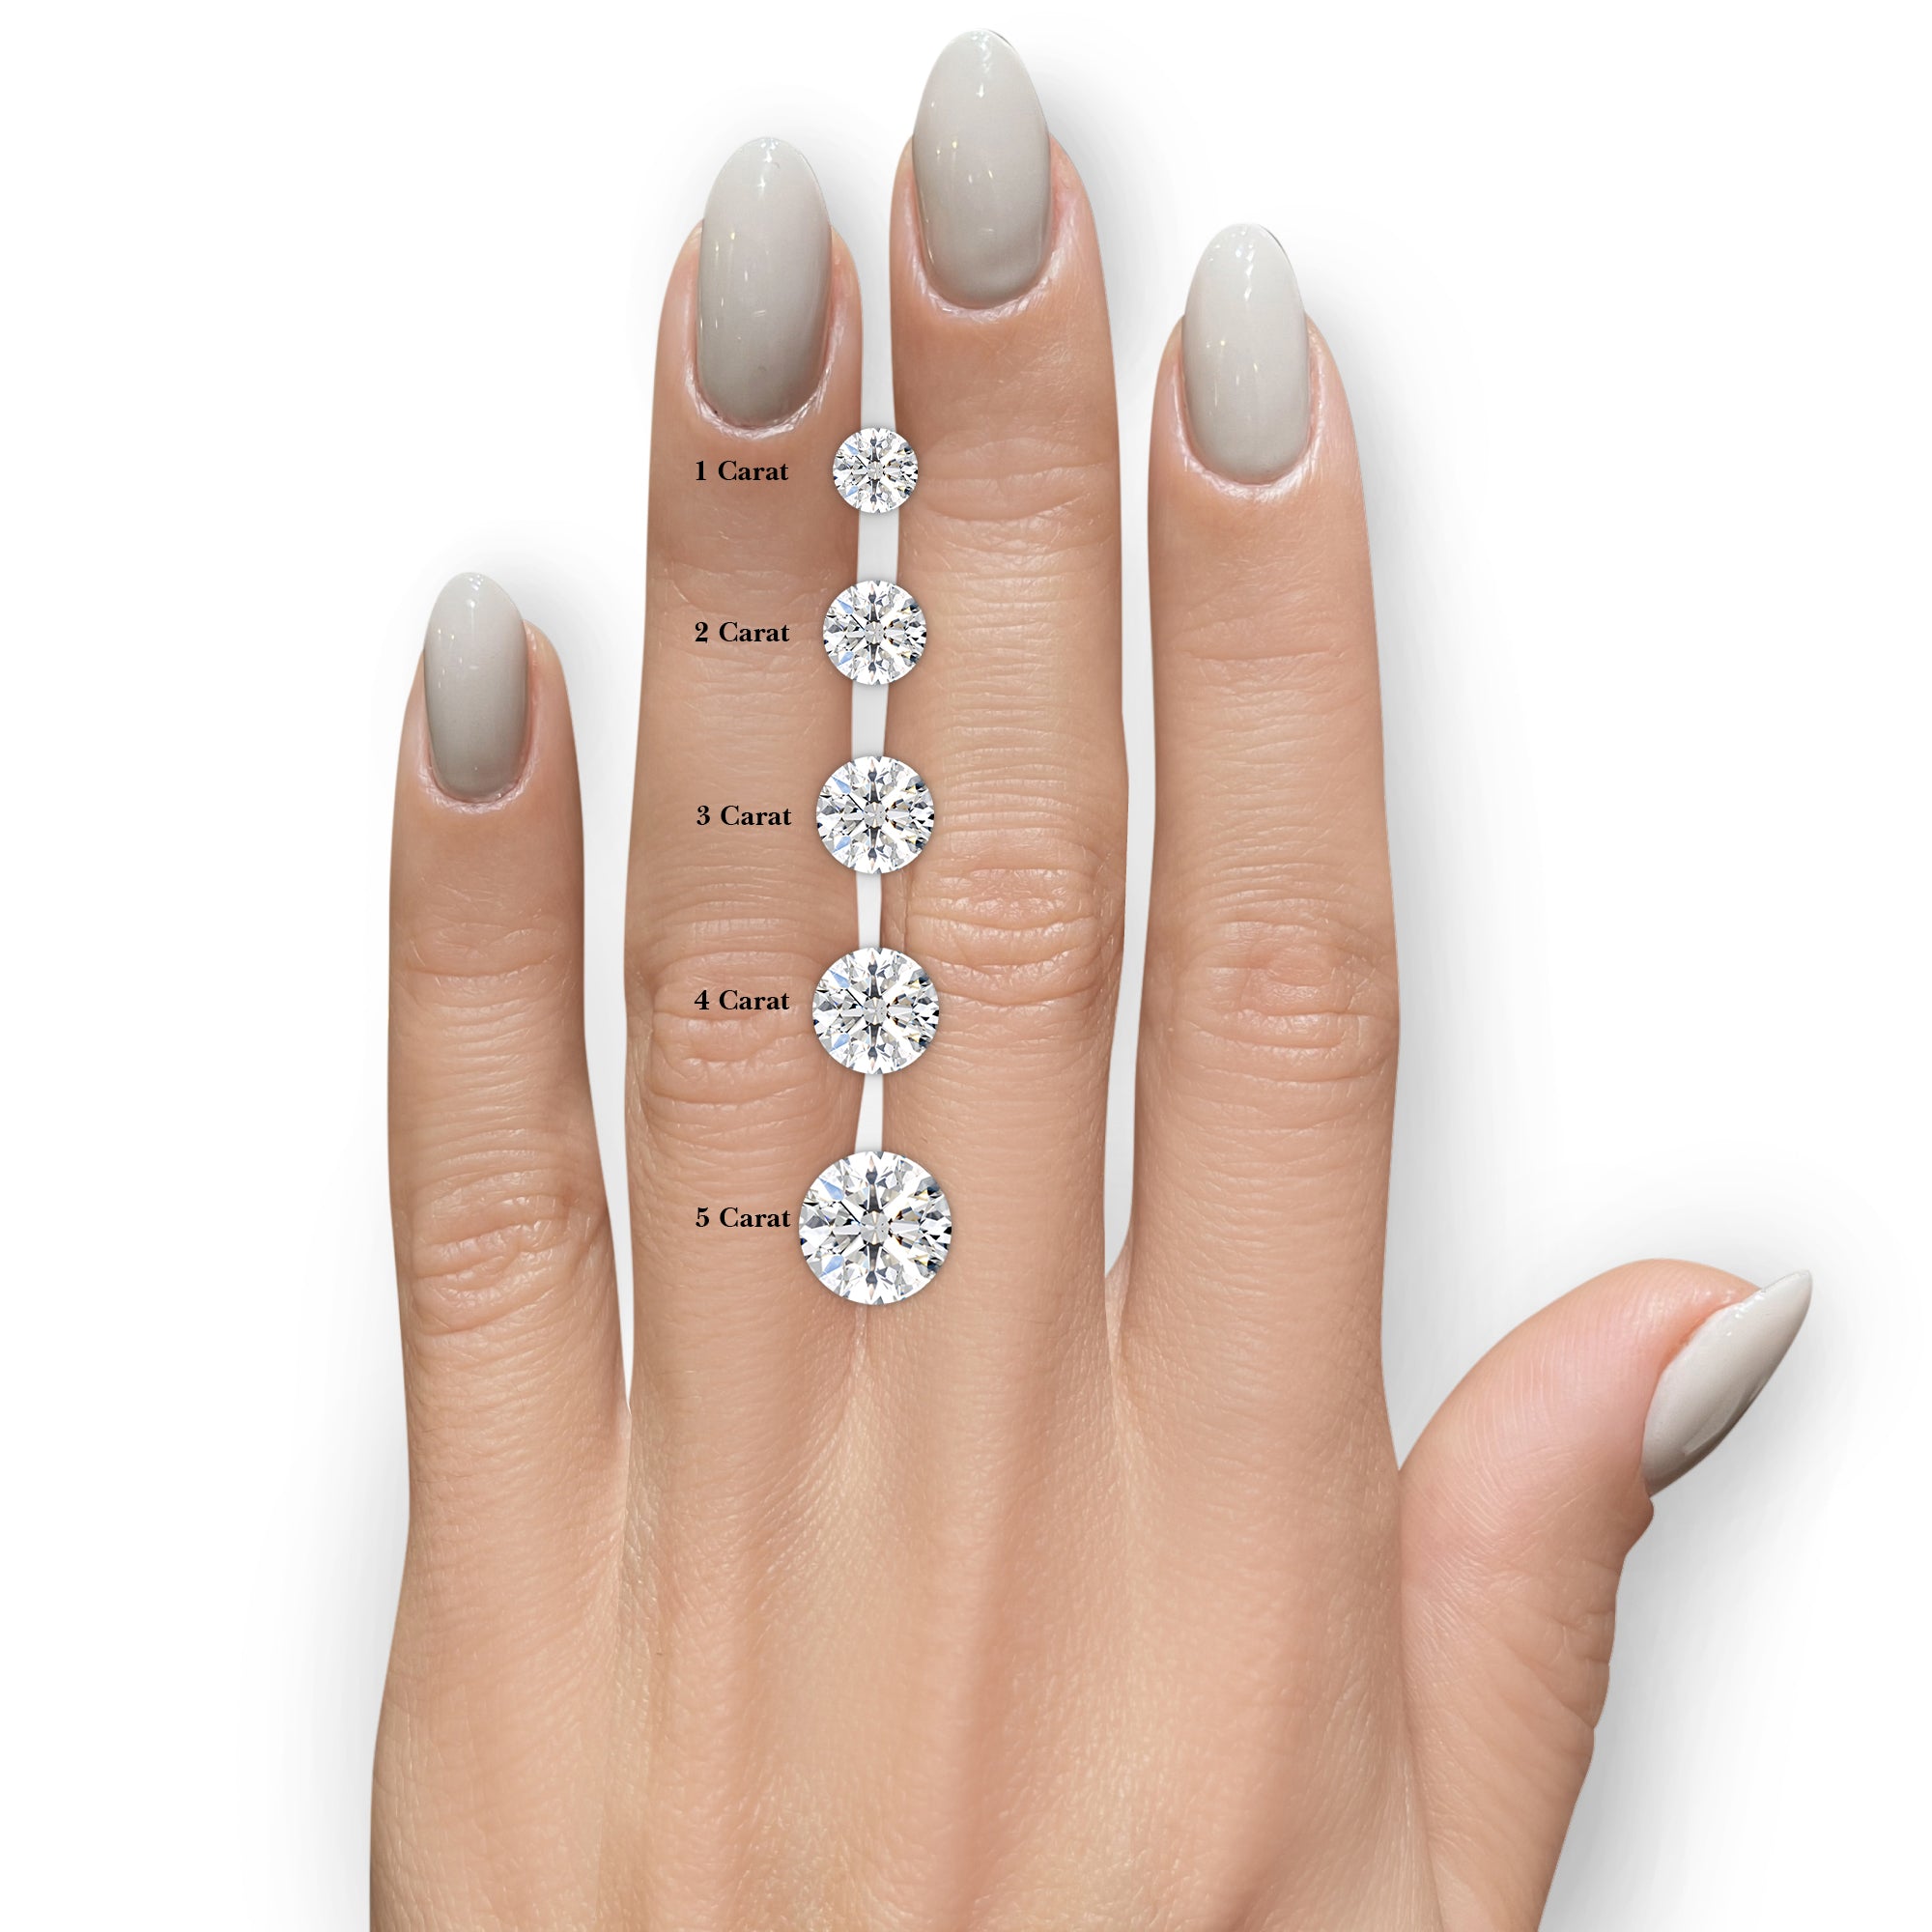 Stella Moissanite & Diamonds Ring -14K Rose Gold